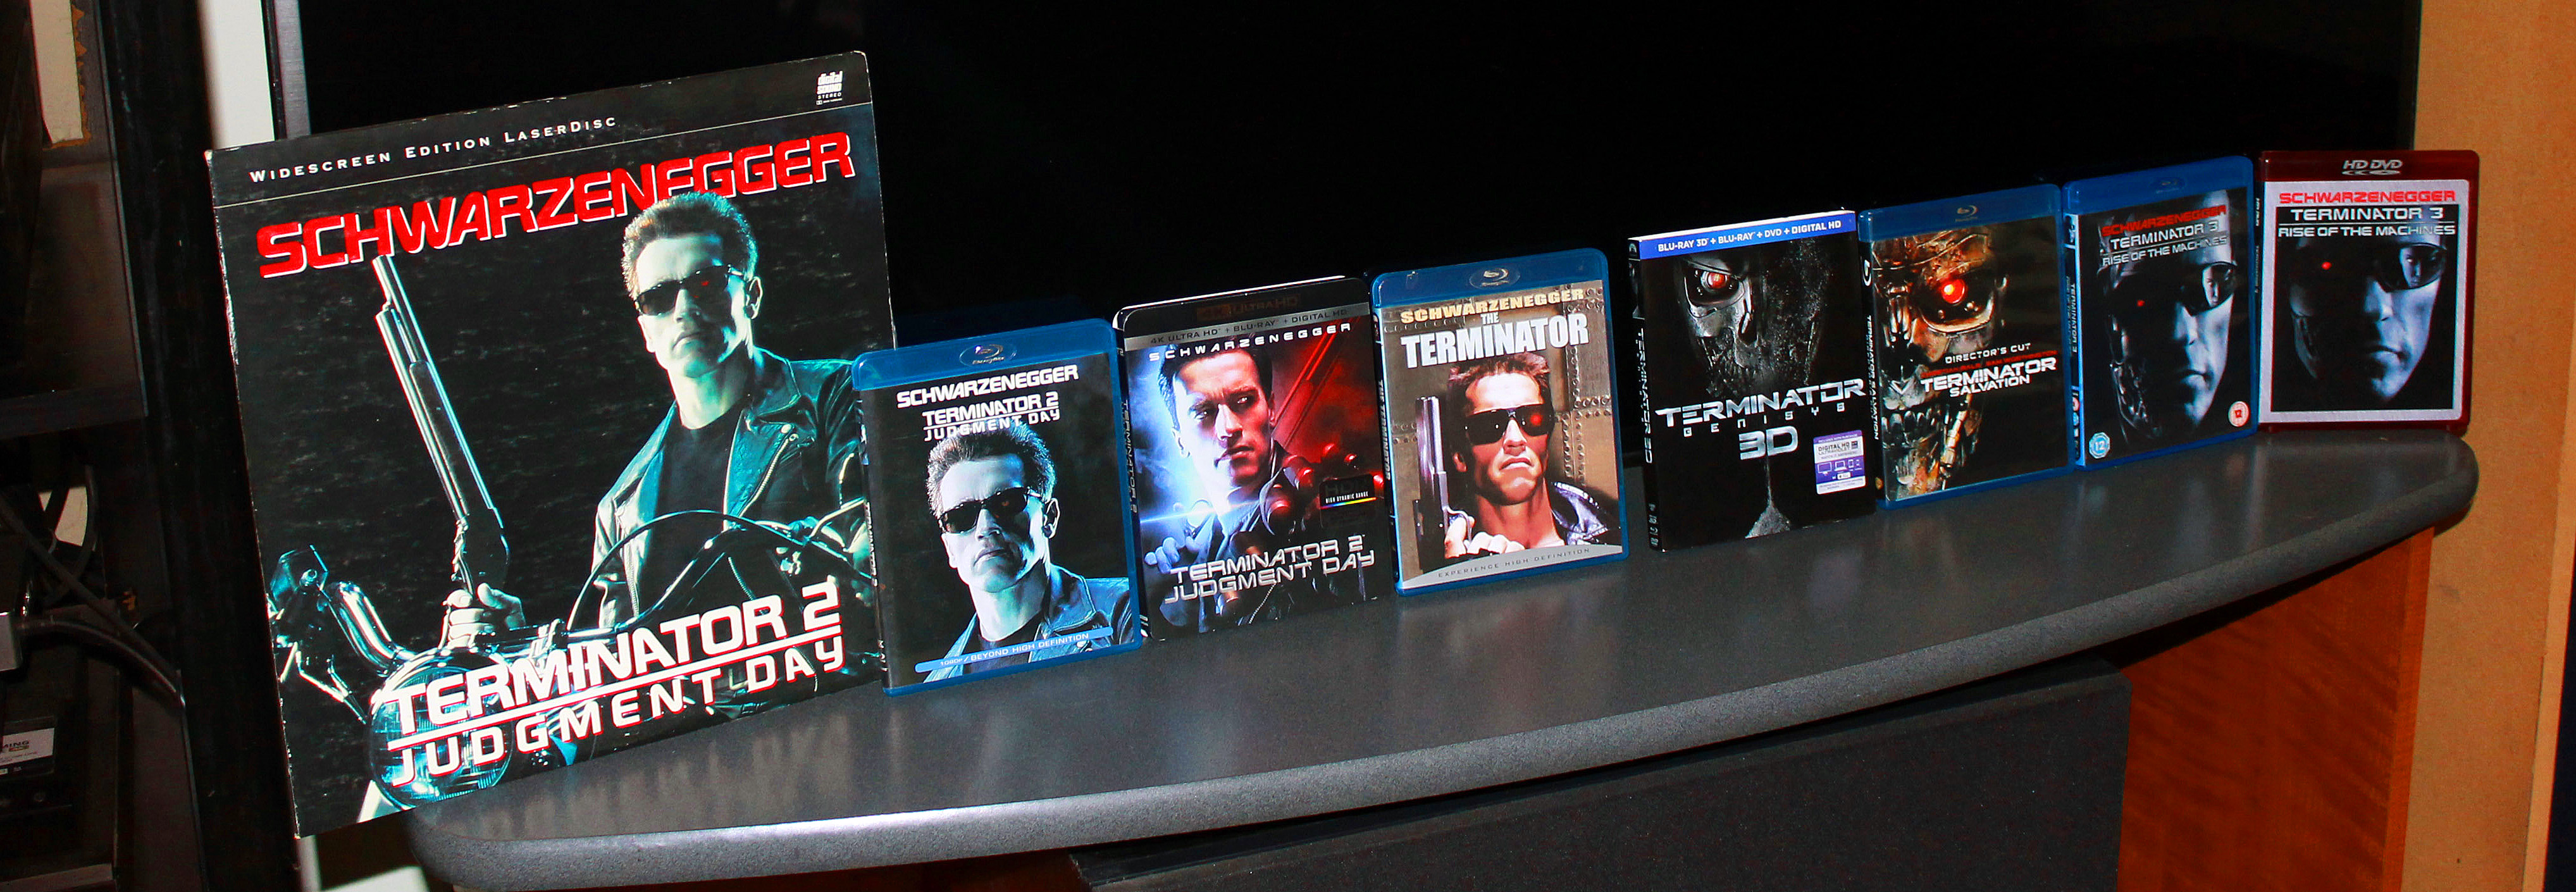 Terminator Collection_a.jpg